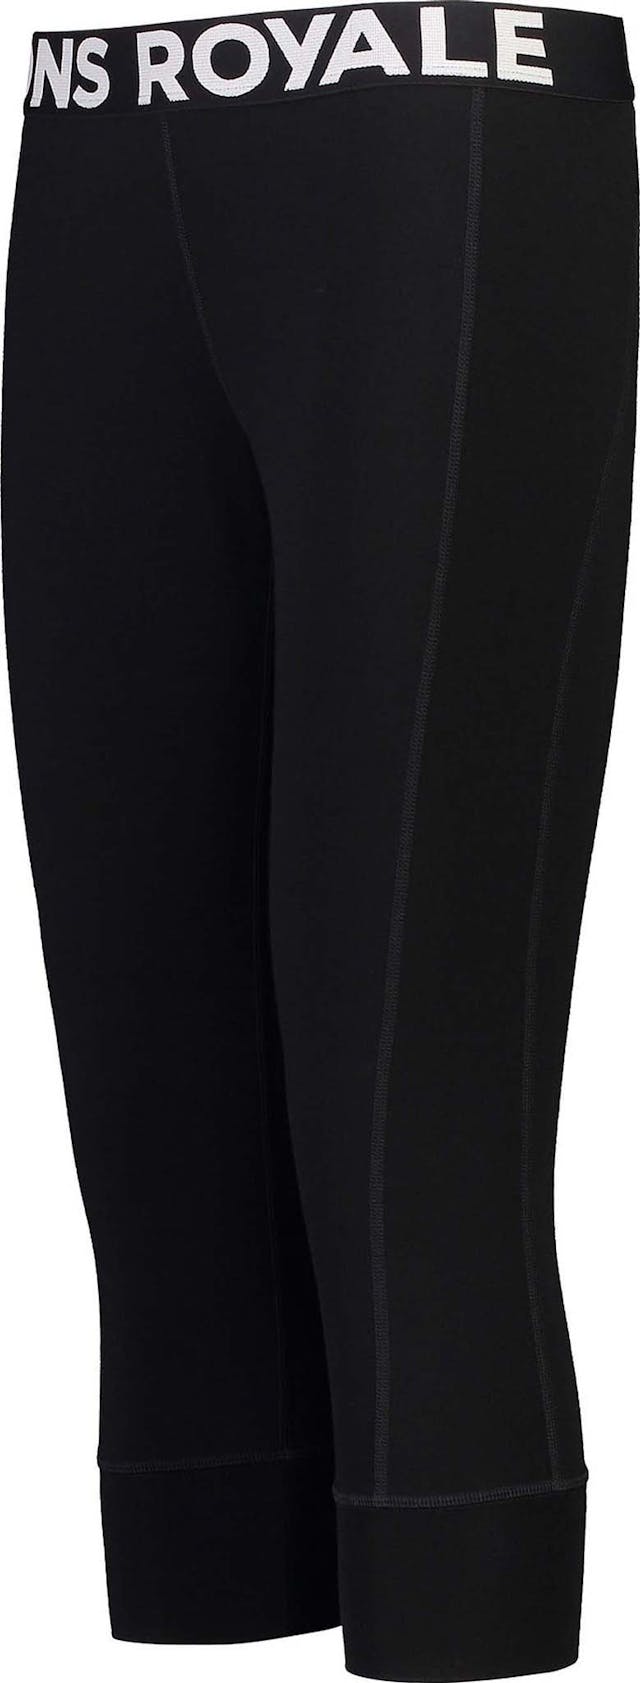 Product image for Cascade Merino Flex 200 3/4 Legging - Women's